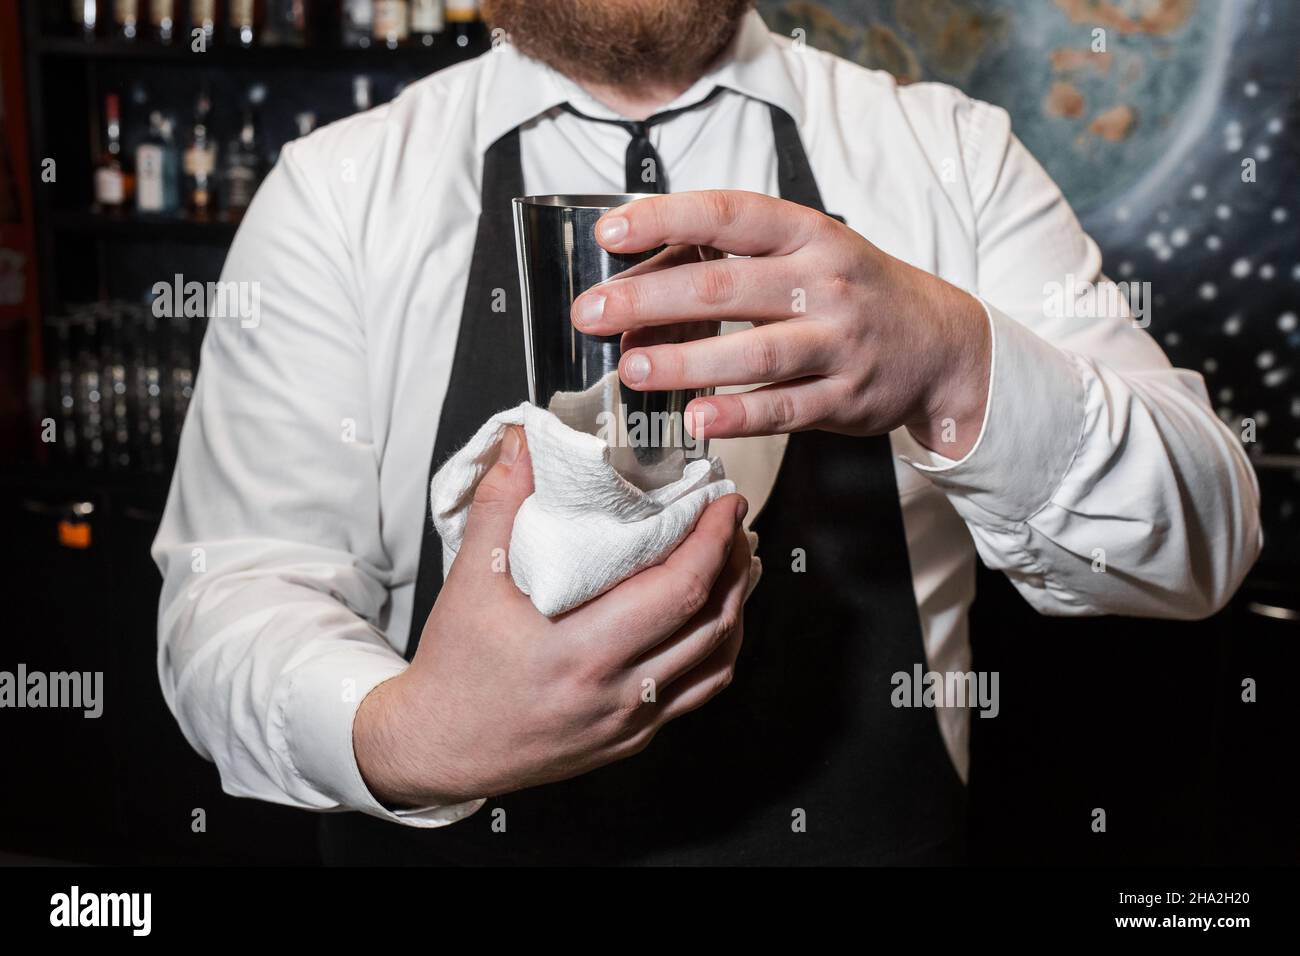 https://c8.alamy.com/compfr/2ha2h20/un-barman-professionnel-tient-un-agitateur-metallique-pour-melanger-et-preparer-des-cocktails-alcoolises-et-l-essuie-avec-un-chiffon-blanc-2ha2h20.jpg